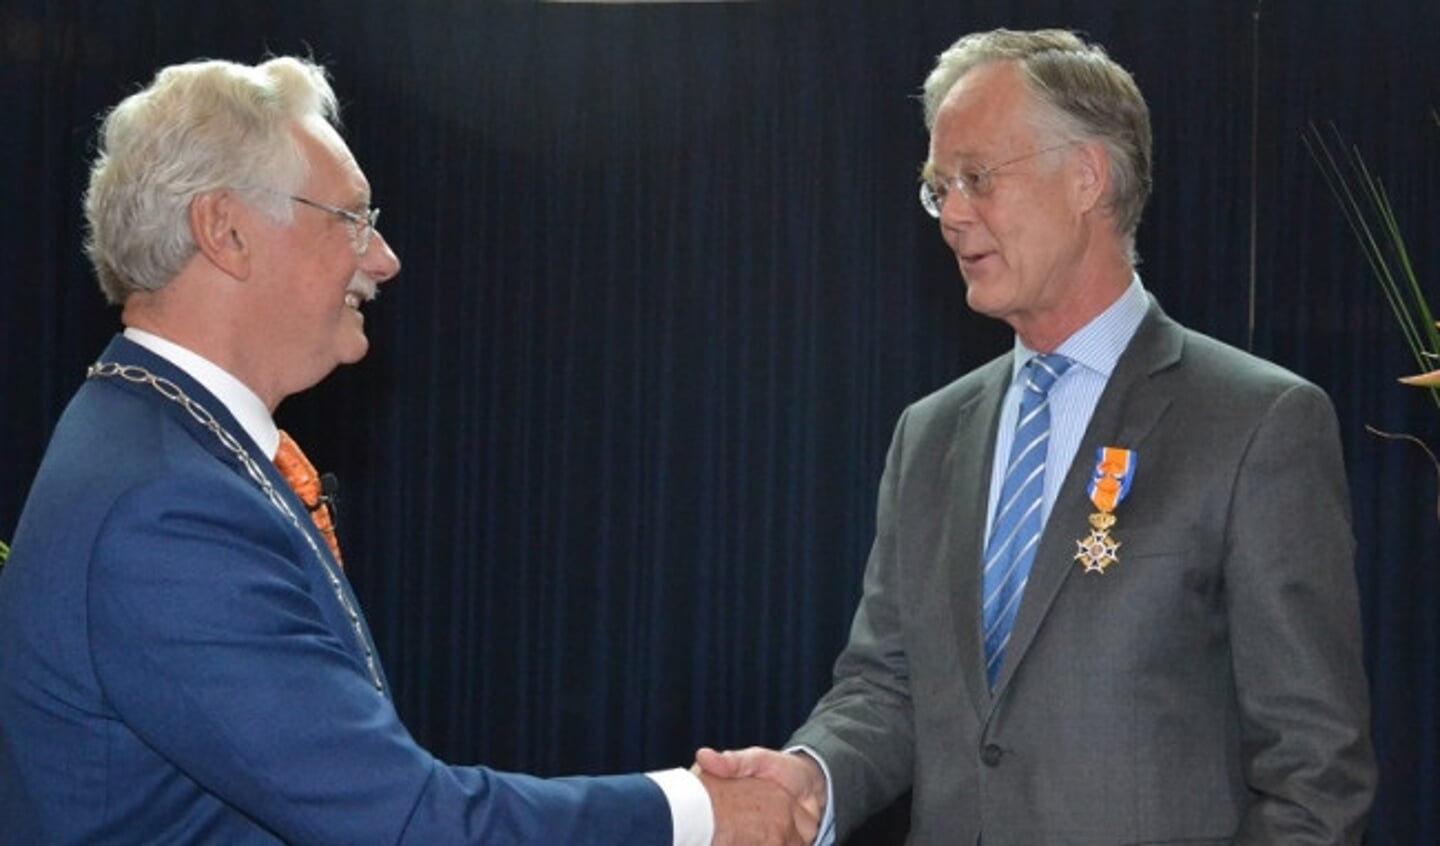  De heer em. prof. dr. Borleffs (66) uit Epe werd benoemd tot Officier in de Orde van Oranje-Nassau